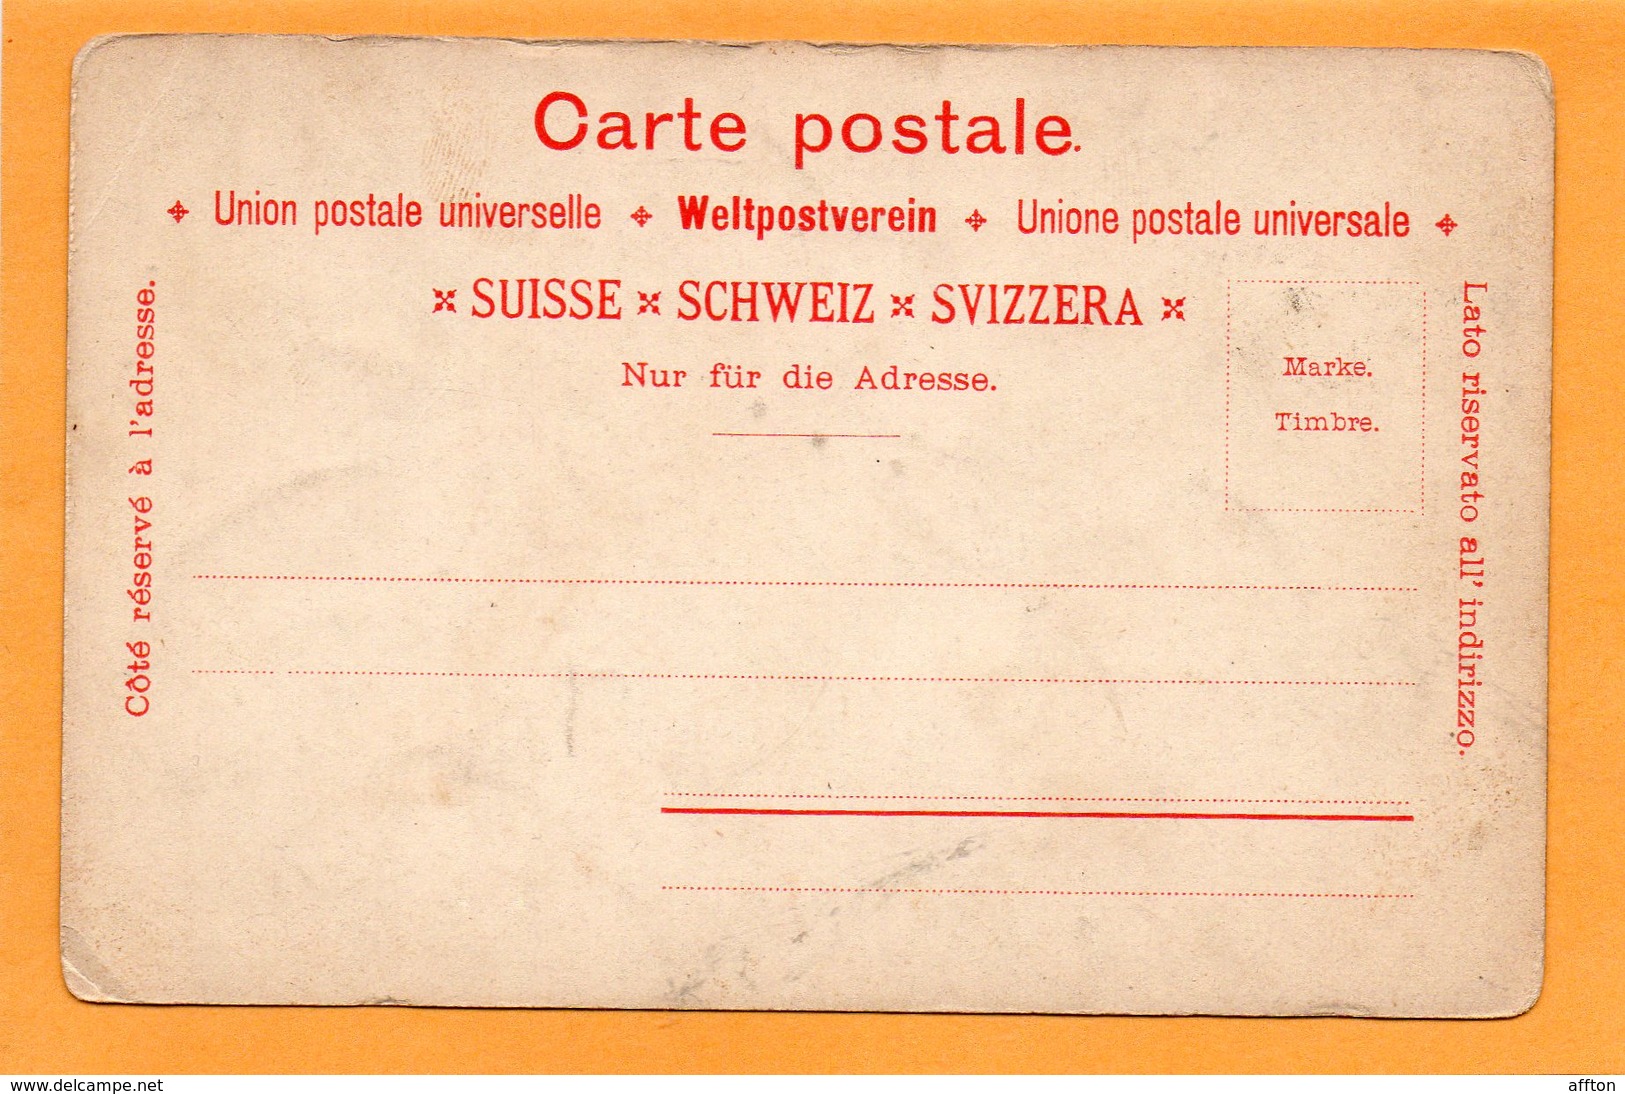 Gruss Aus Rheineck 1900 Postcard - Rheineck